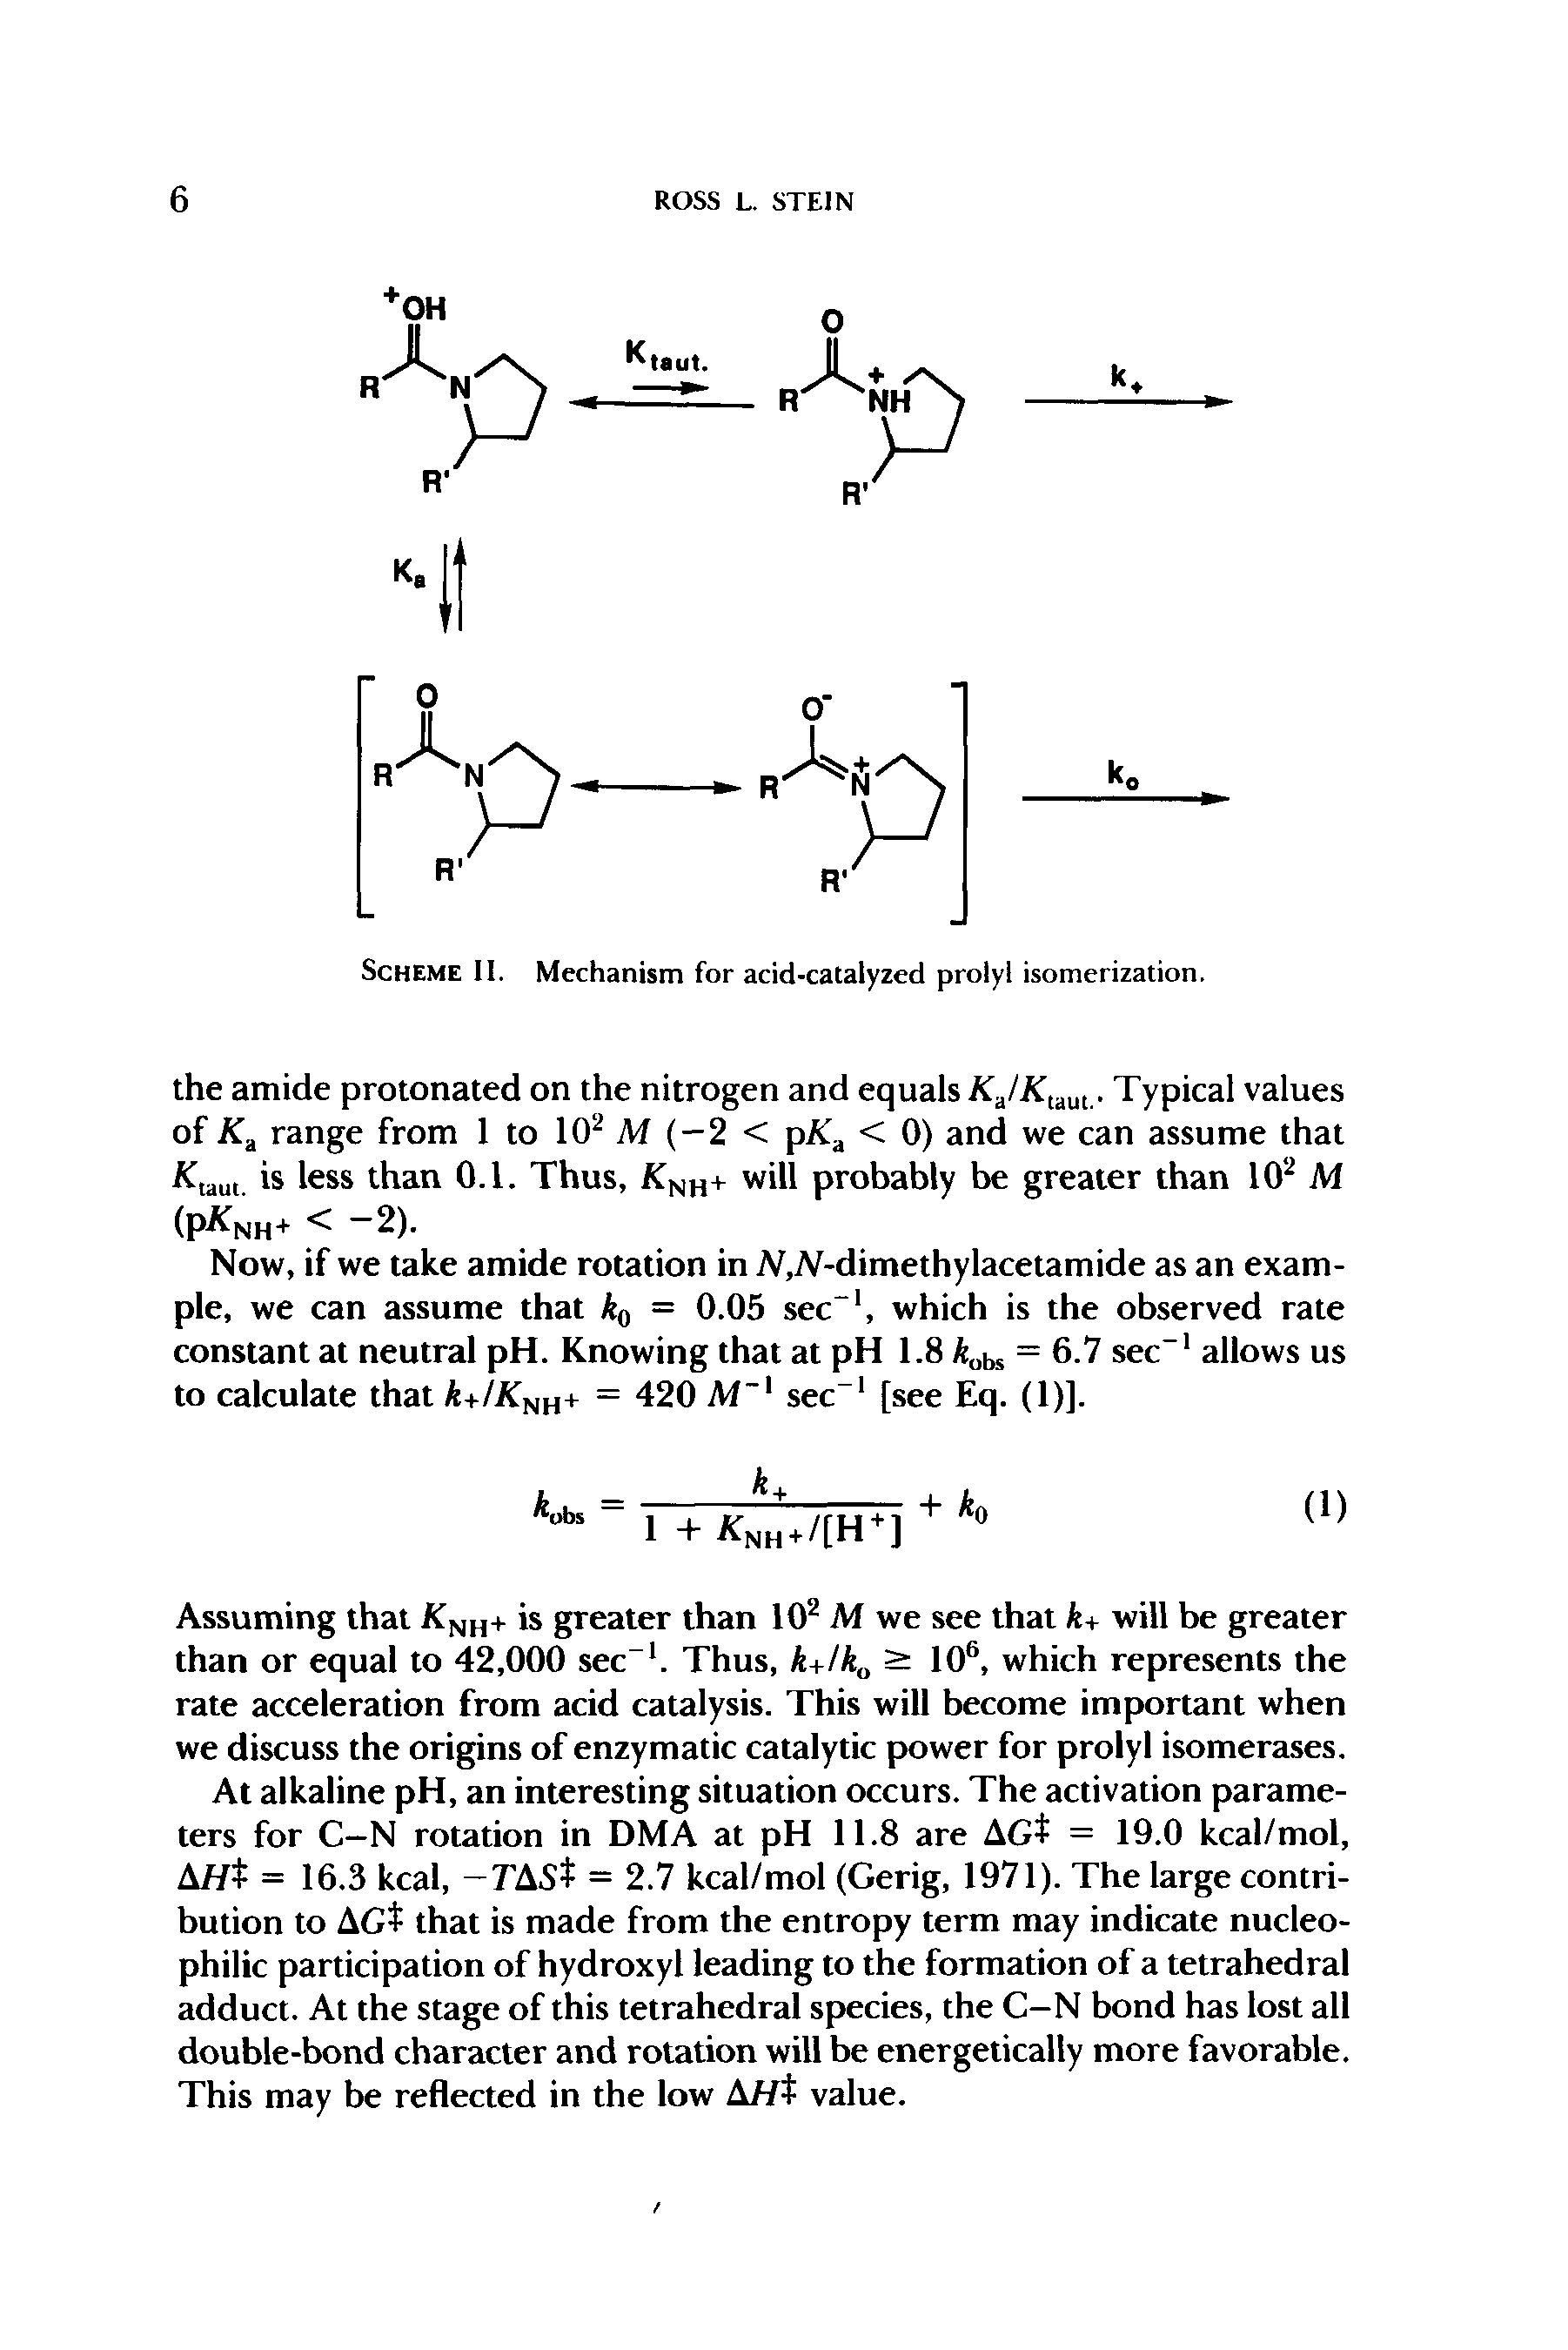 Scheme 11. Mechanism for acid-catalyzed prolyl isomerization.